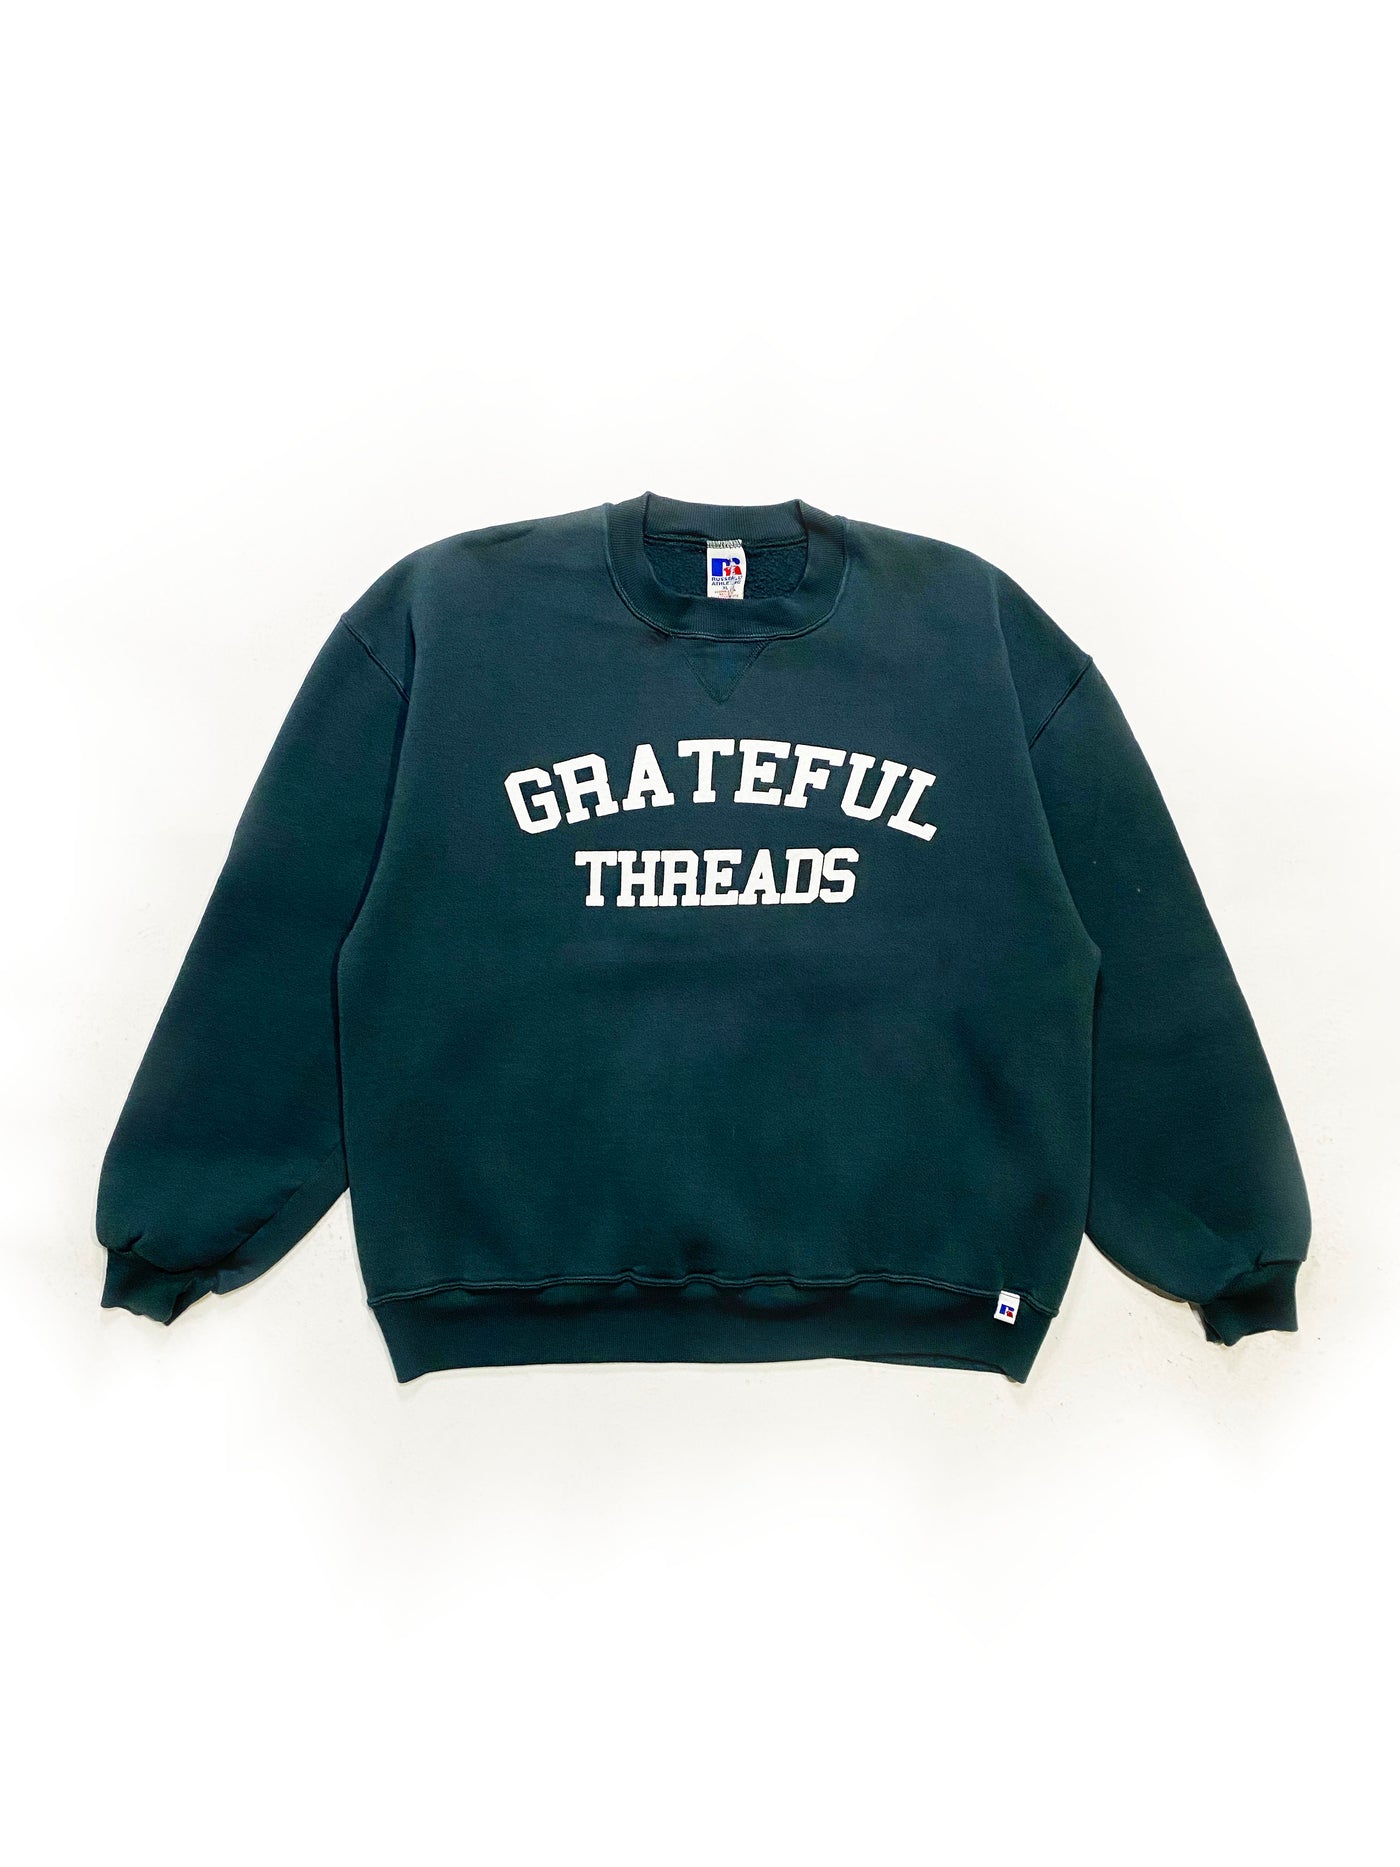 90s Russell Grateful Threads Spellout Crewneck - Dark Cyan - Size XL